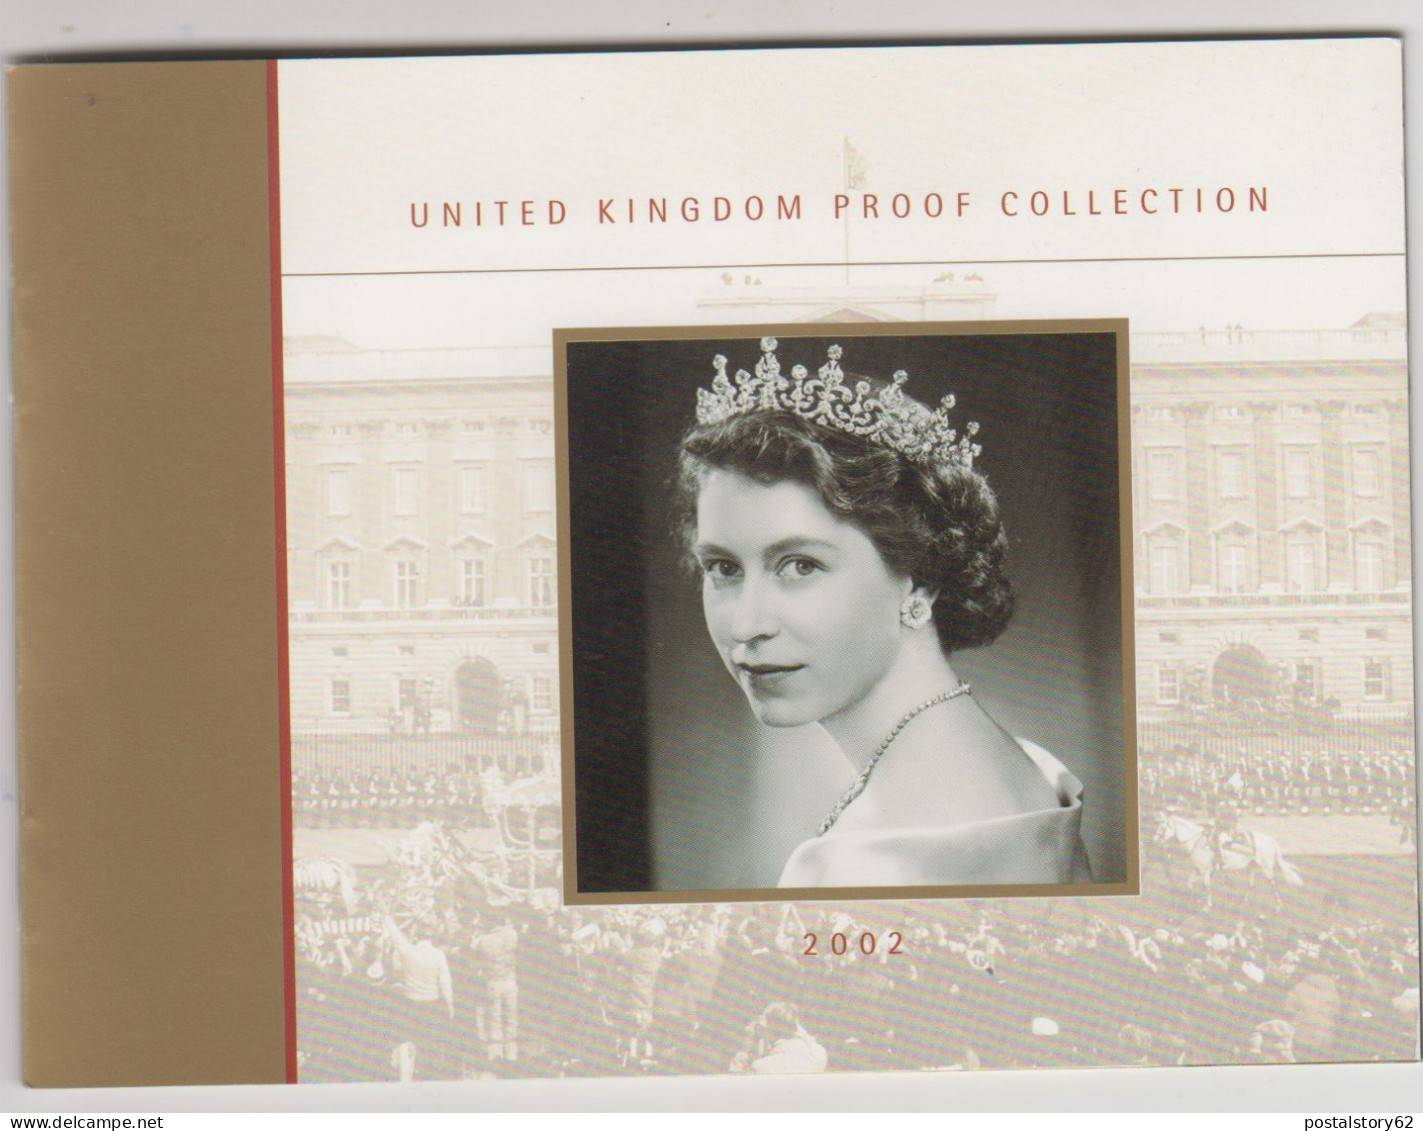 Gran Bretagna, United Kingdom Proof Collection - Serie Completa Ufficiale In Confezione Integra 2002 - Maundy Sets & Gedenkmünzen